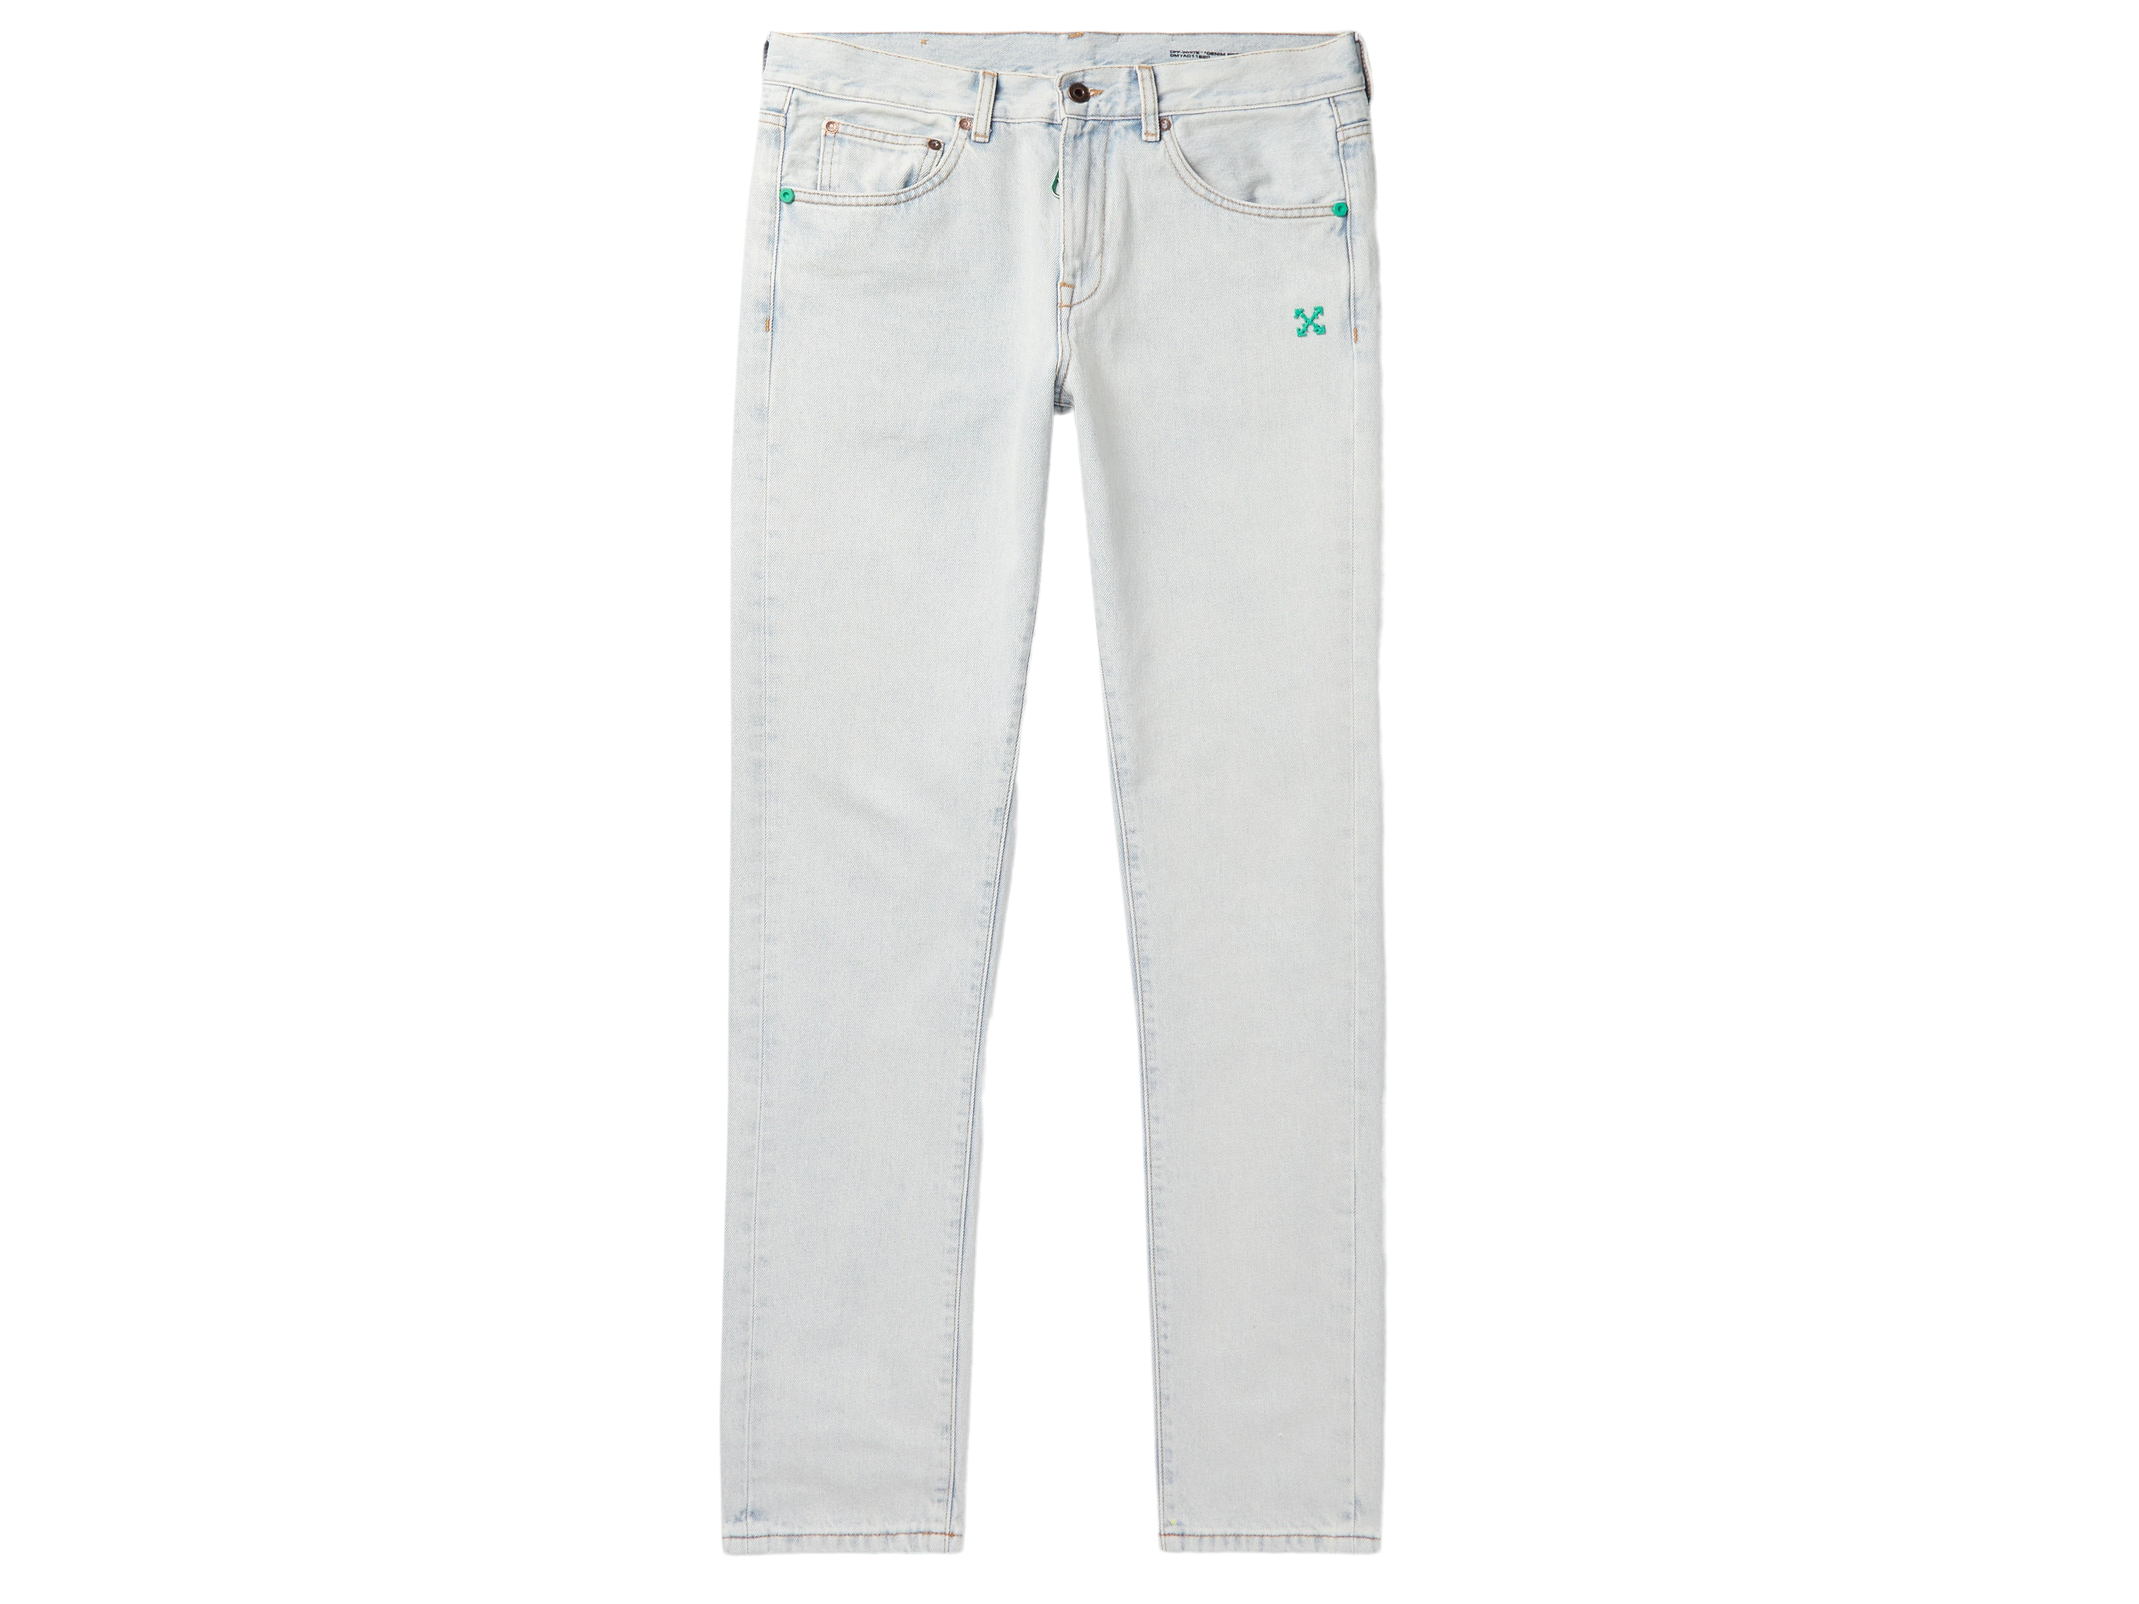 Avirex Light Bleached Blue Jeans Denim Pants Size 38W & 34 In | eBay